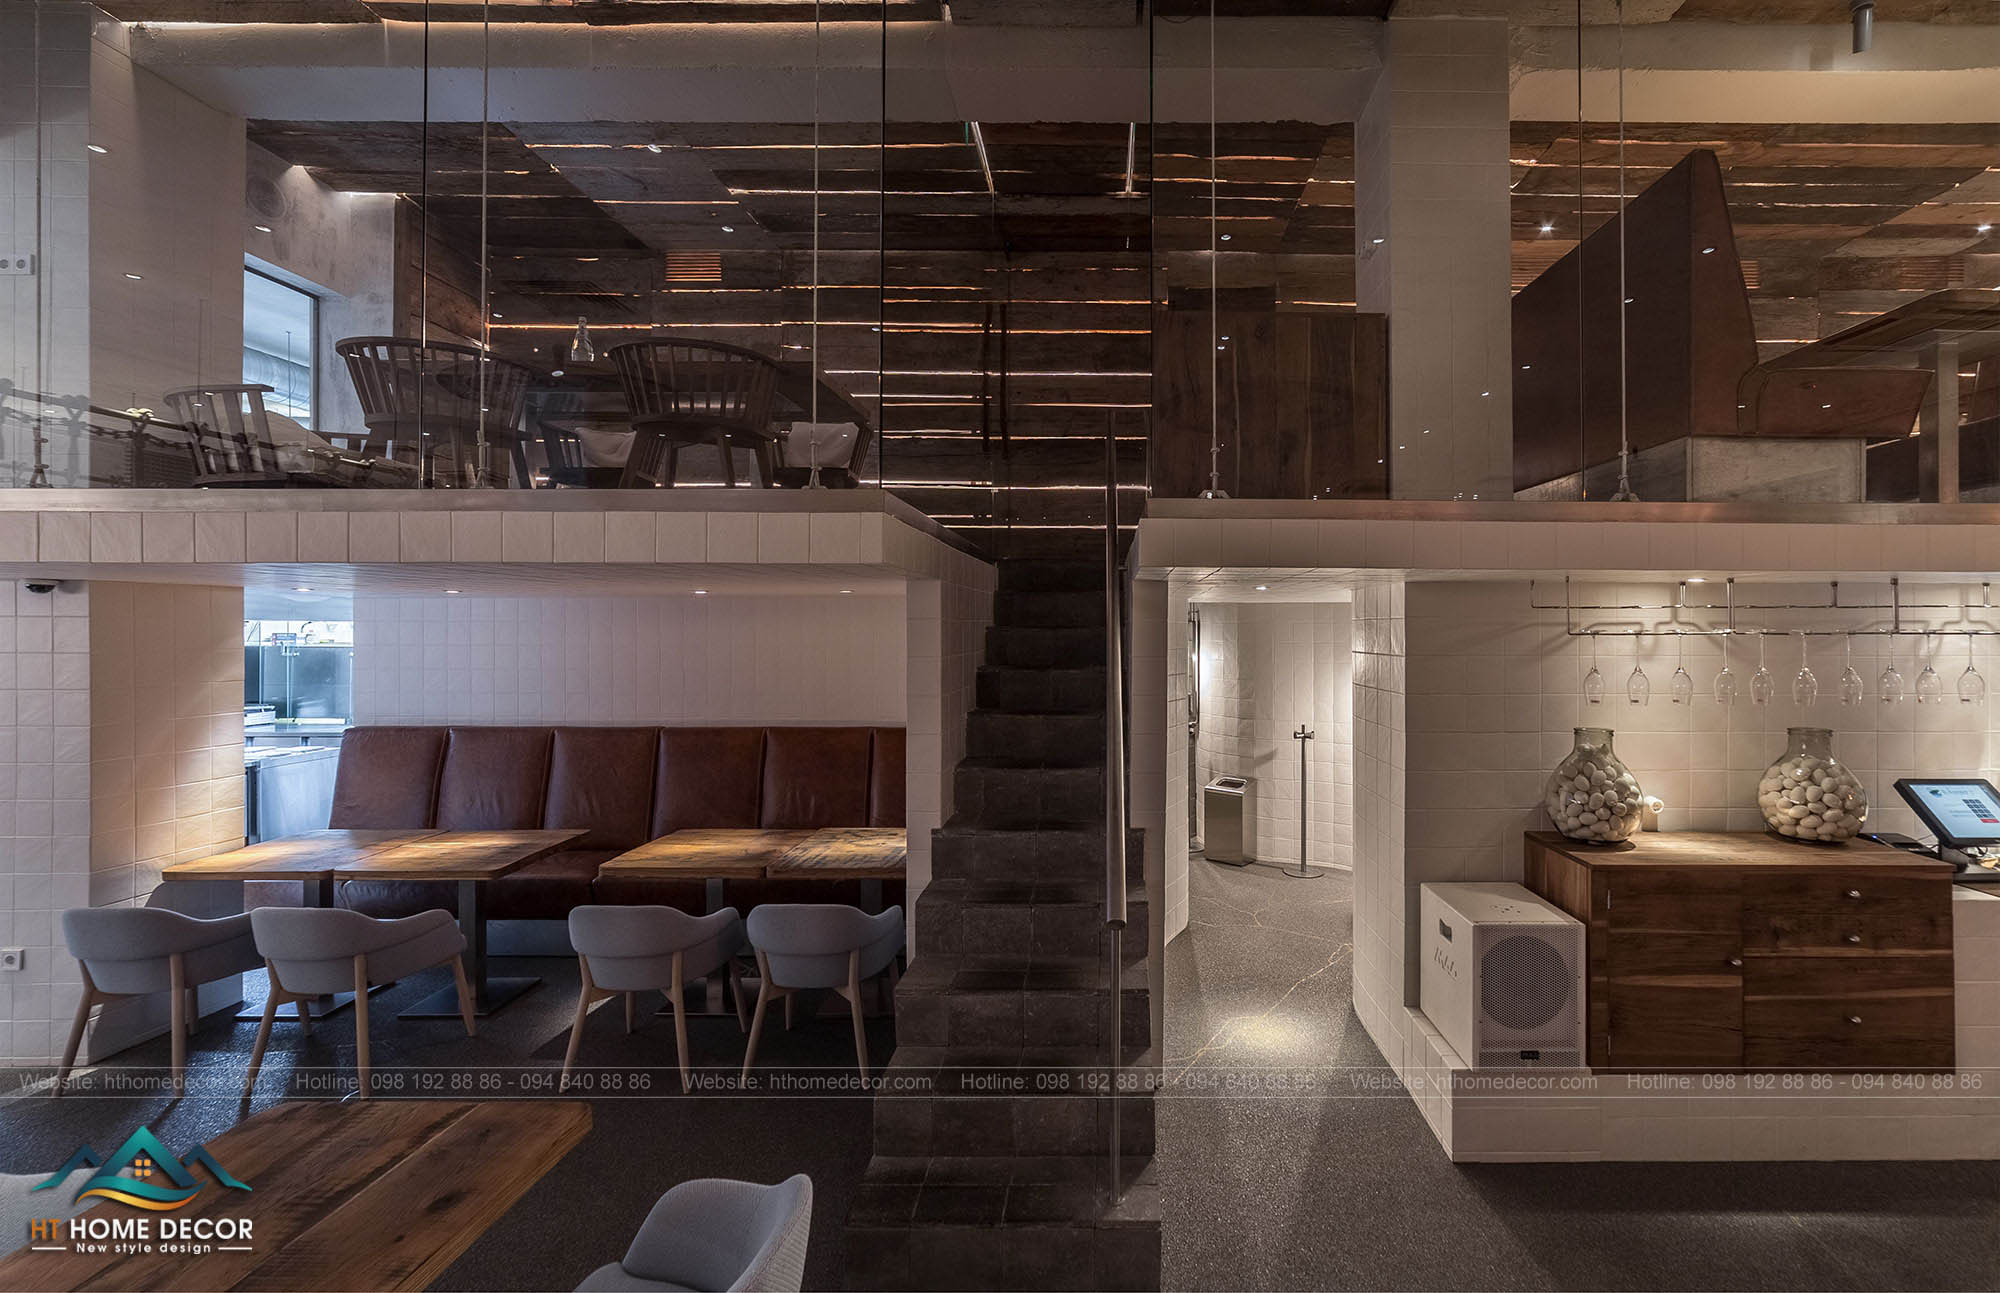 Cầu thang nhỏ được thiết kế tiện dụng cho công năng lên tầng. Tận dụng được không gian nhưng vẫn giữ được vẻ đẹp riêng biệt cho nhà hàng. 